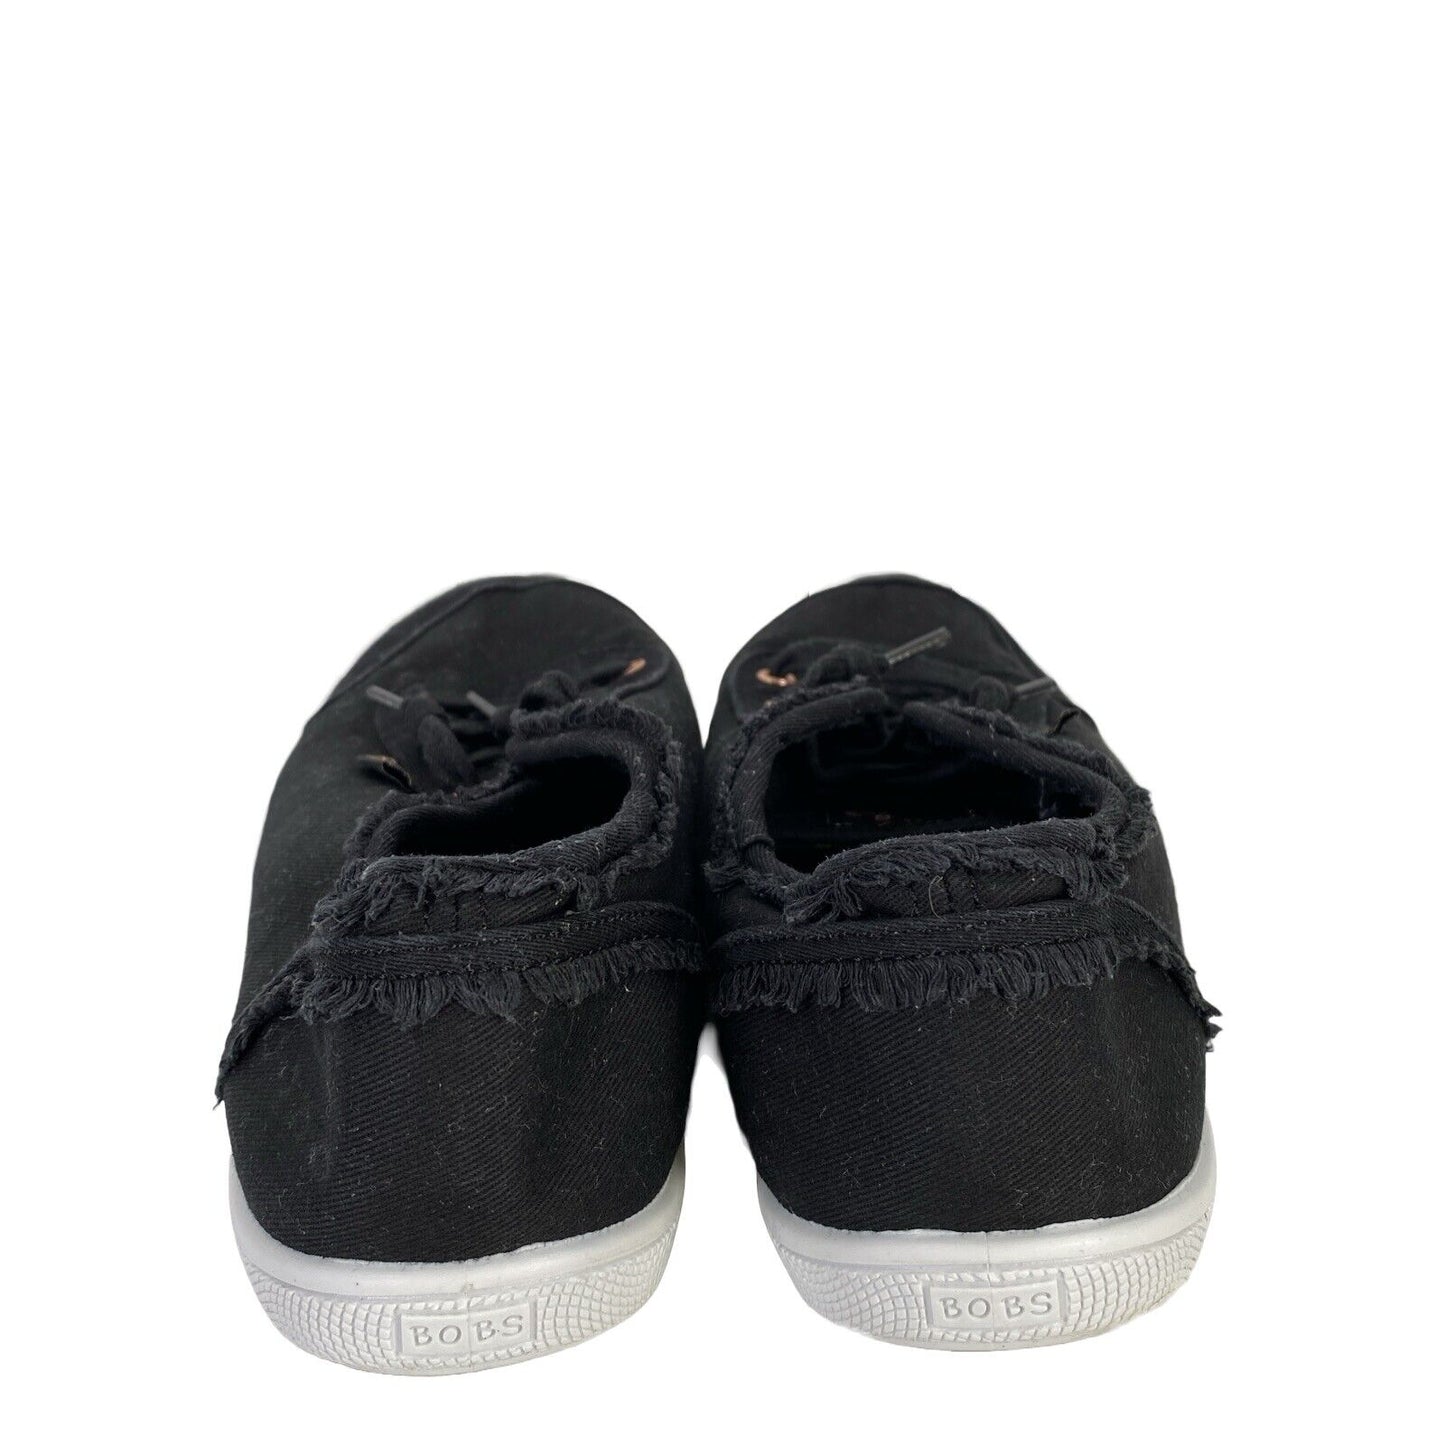 Bobs by Skechers Women's Black B Cute Slip On Sneakers - 7.5